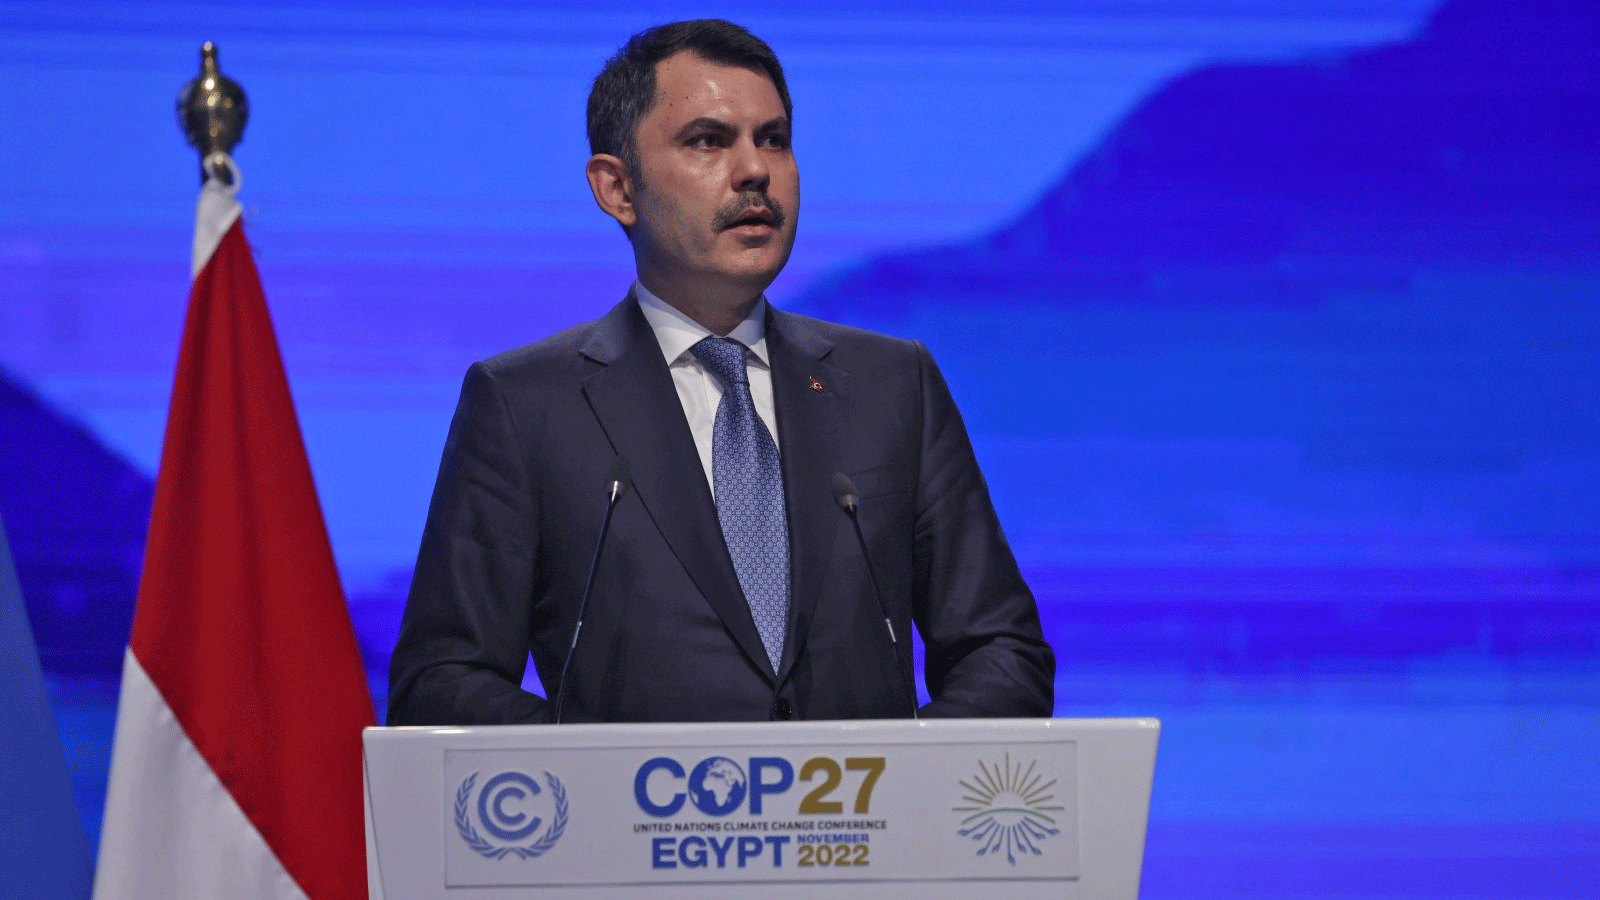 وزير البيئة والتخطيط العمراني وتغير المناخ مراد كوروم يلقي كلمة في مؤتمر COP27، في شرم الشيخ، مصر، 15 تشرين الثاني\ نوفمبر 2022